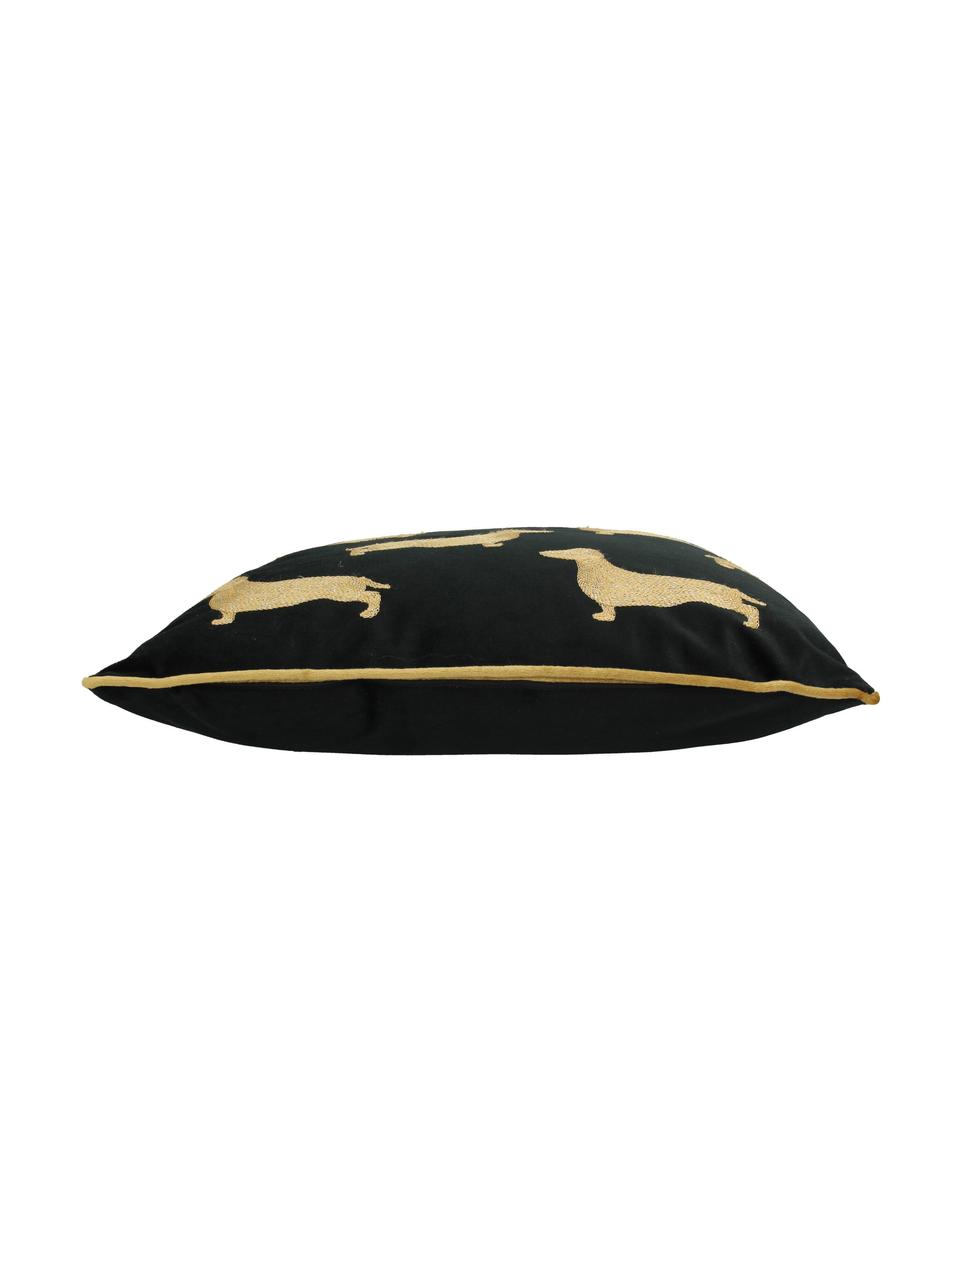 Cojín de terciopelo bordado Dachshund, con relleno, Funda: terciopelo de poliéster, Negro, dorado, An 45 x L 45 cm